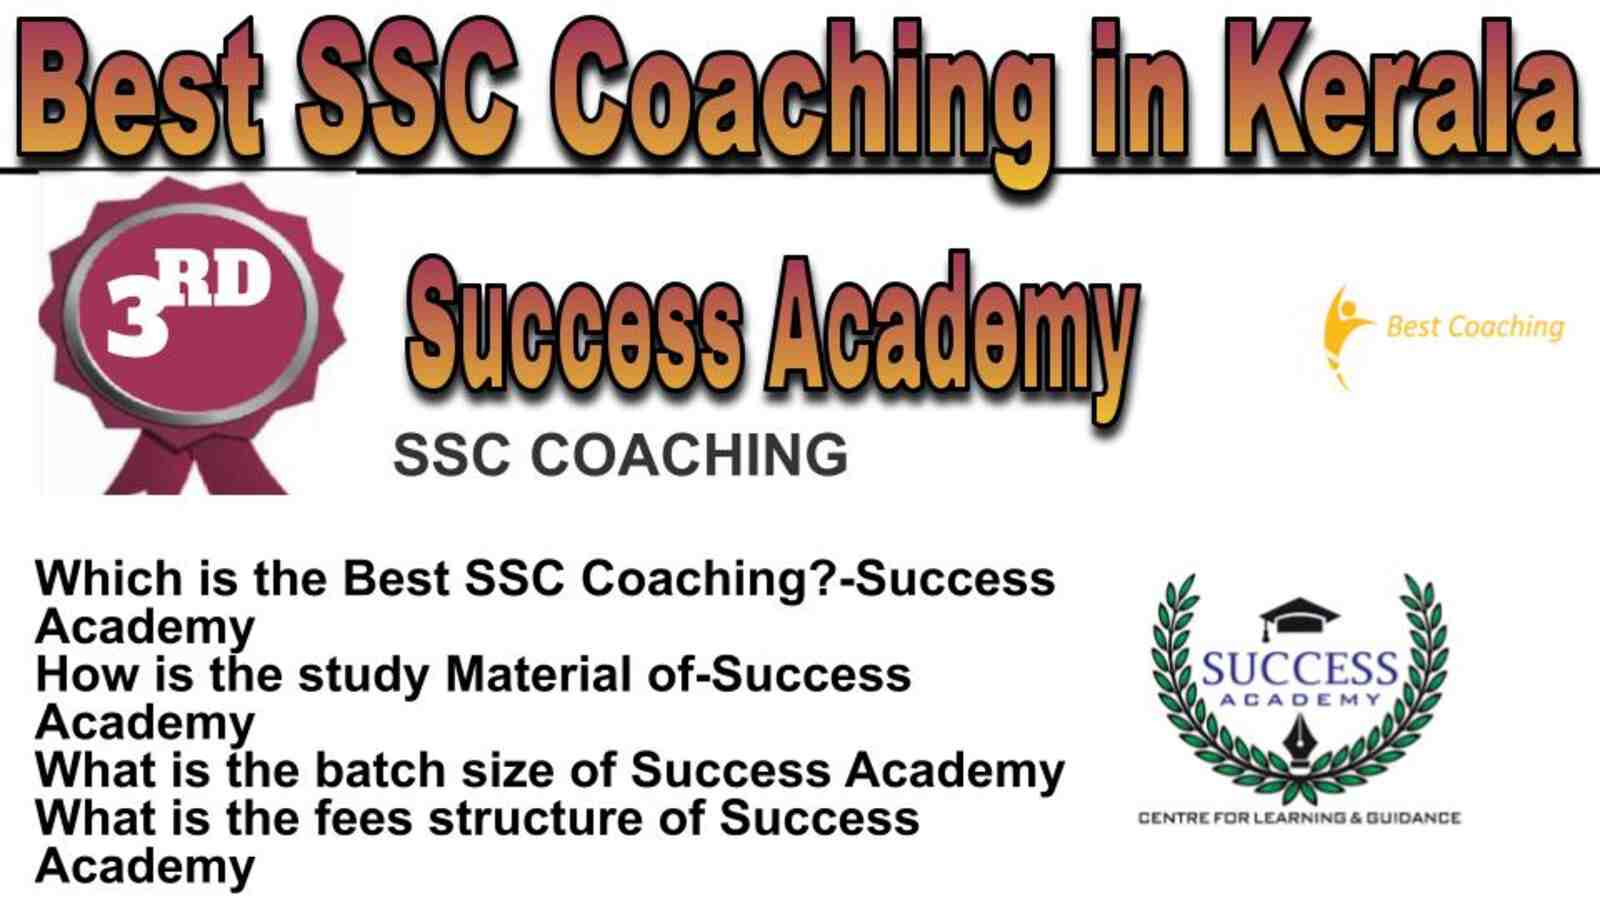 Rank 3 best SSC coaching in Kerala